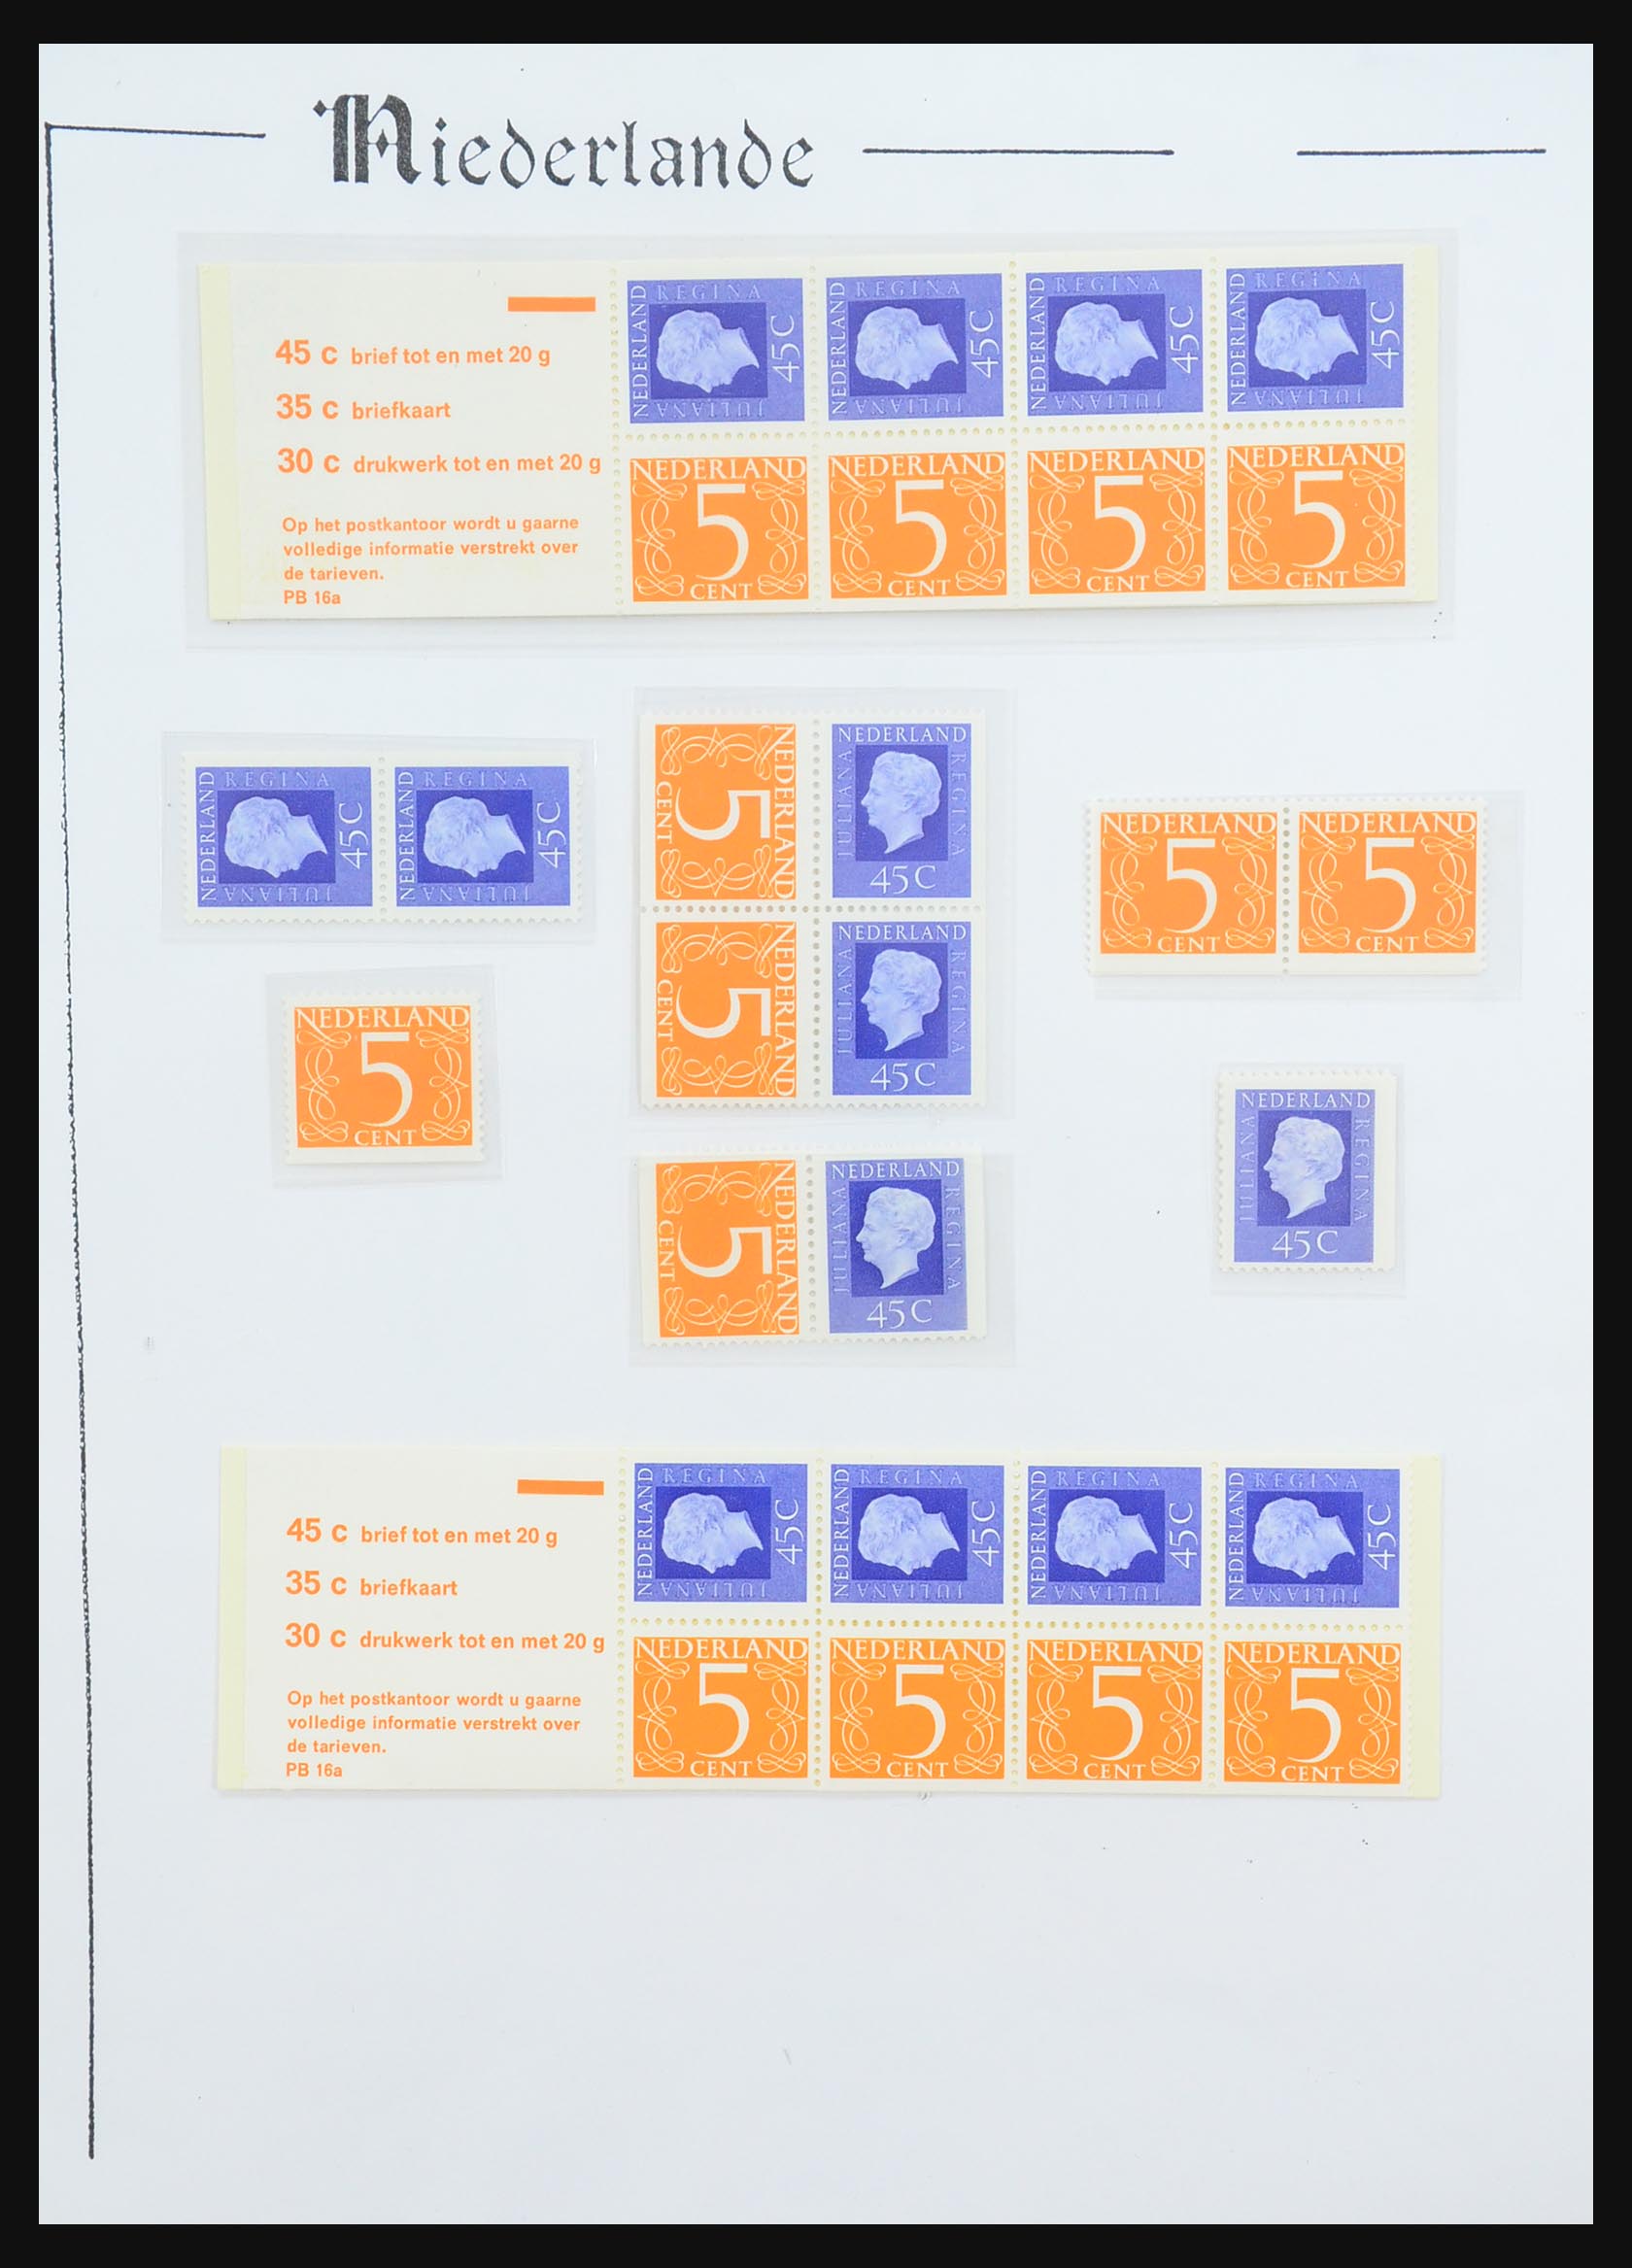 31311 059 - 31311 Netherlands stamp booklets 1964-1994.